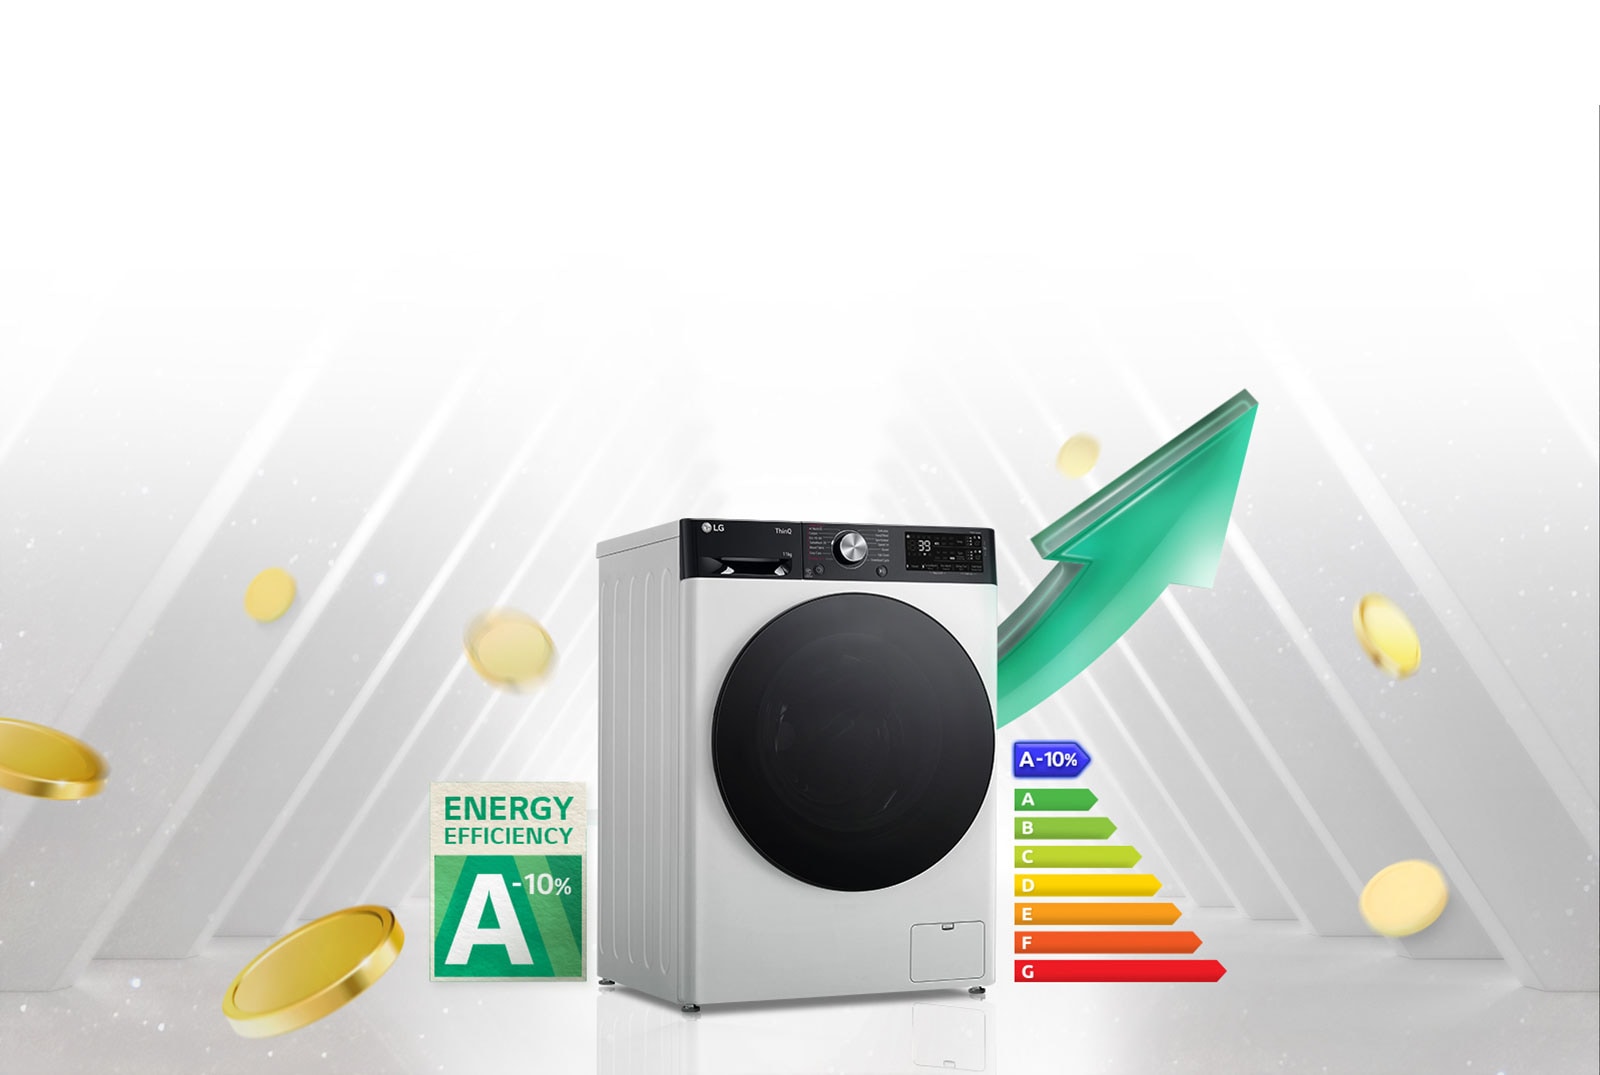 Рядом со стиральной машиной находится этикетка с номинальной энергоэффективностью A-10% и таблица энергоэффективности.  На задней панели стиральной машины появится зеленая стрелка, направленная вверх.